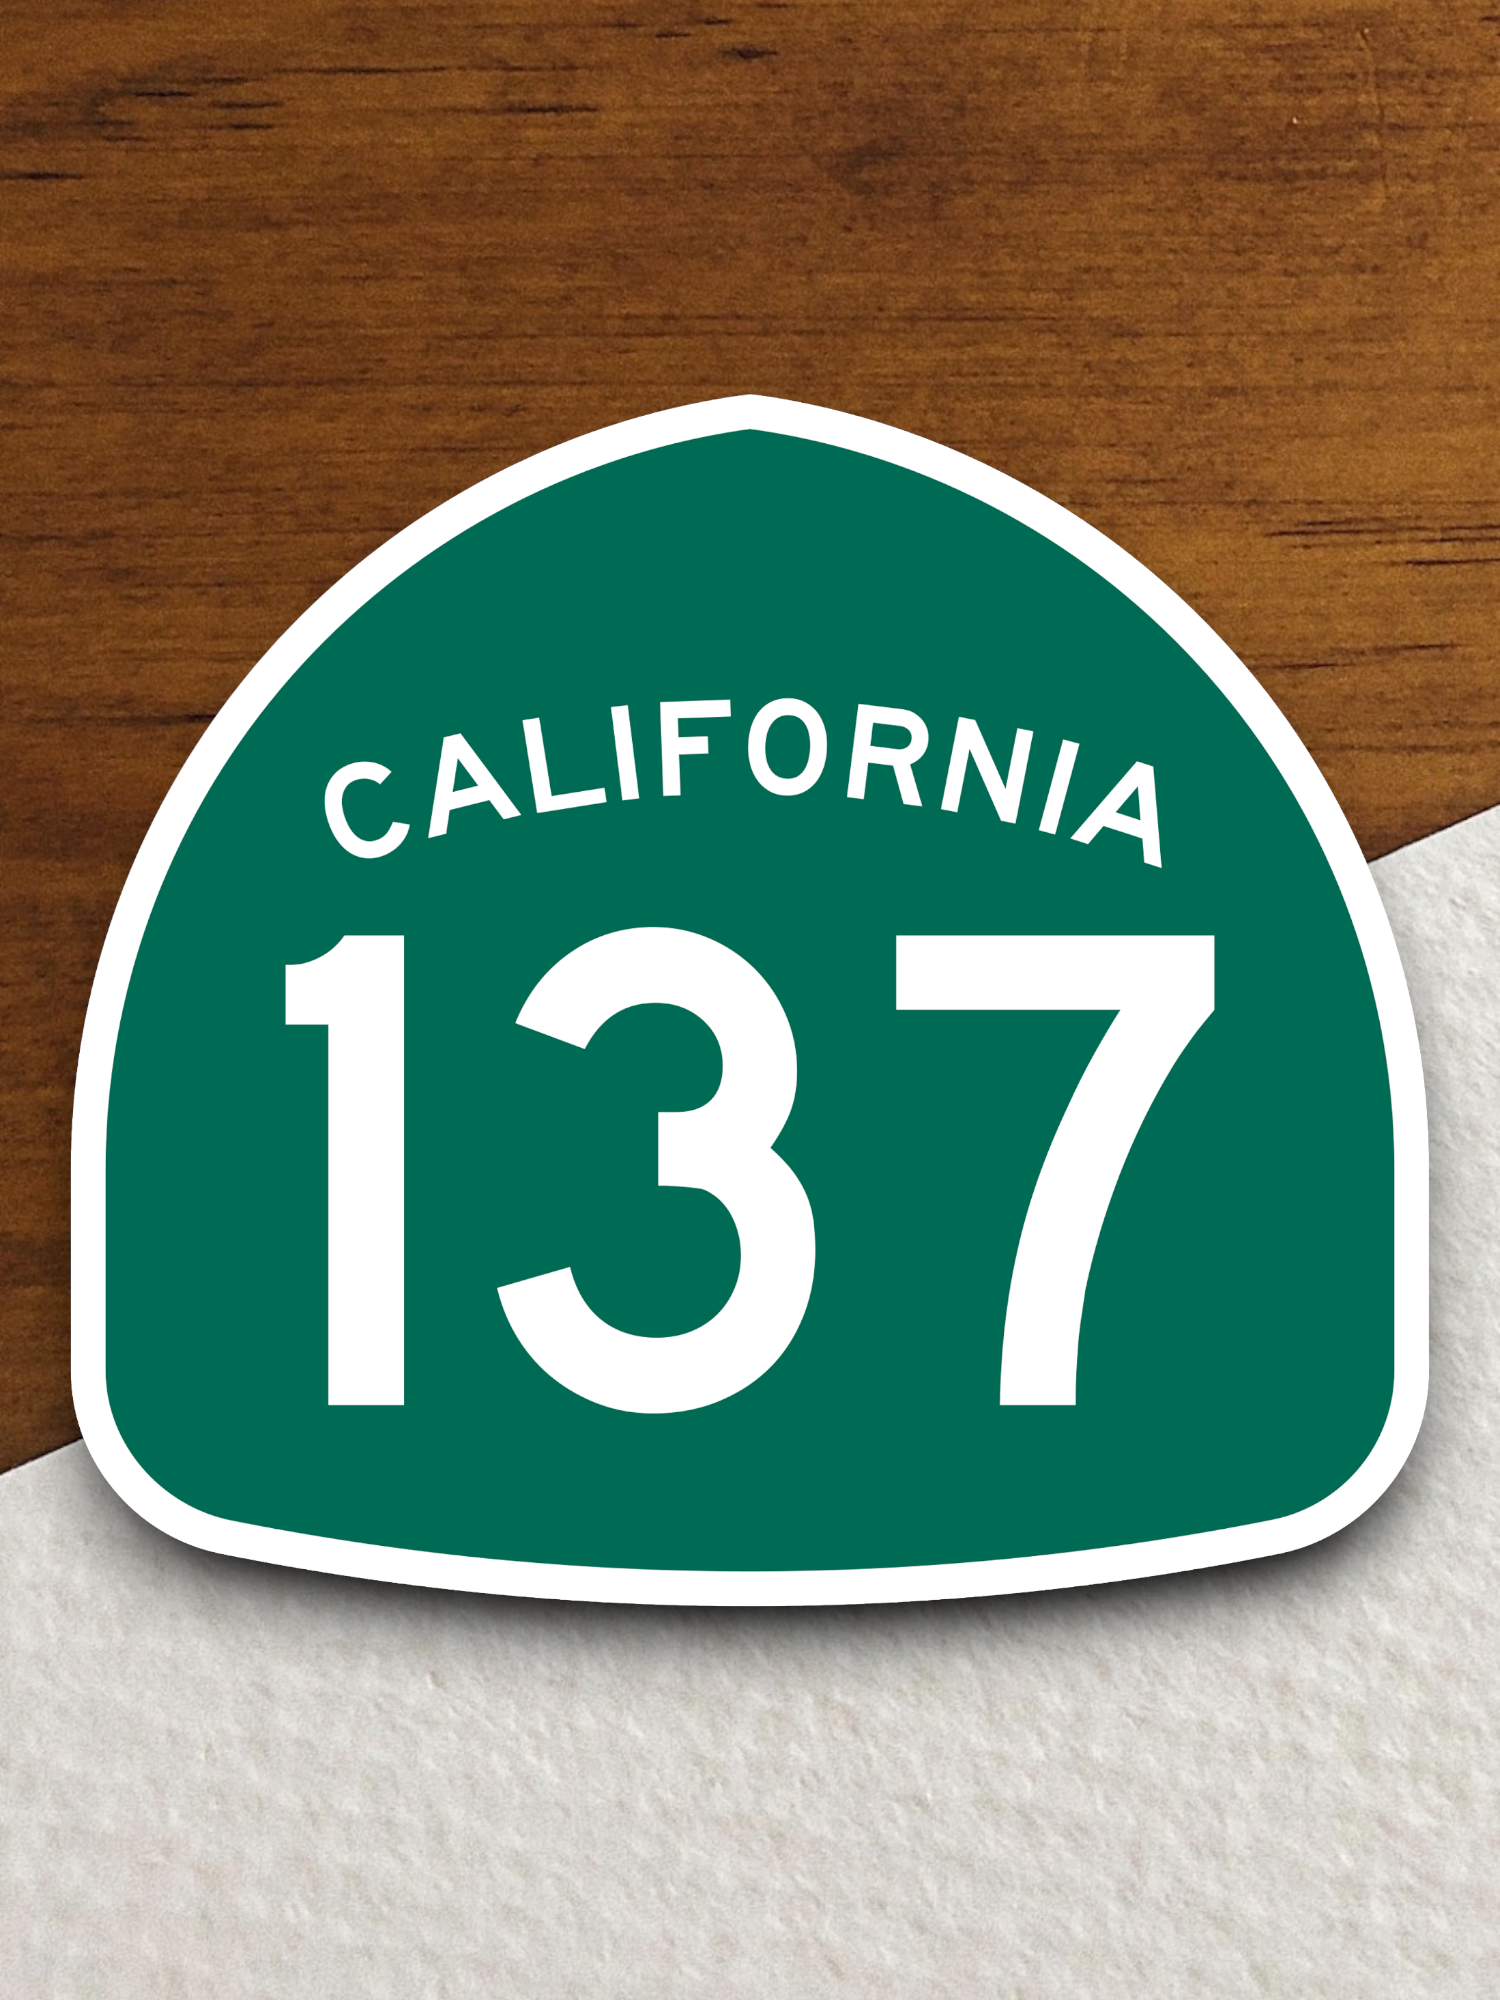 California State Route 137 Sticker